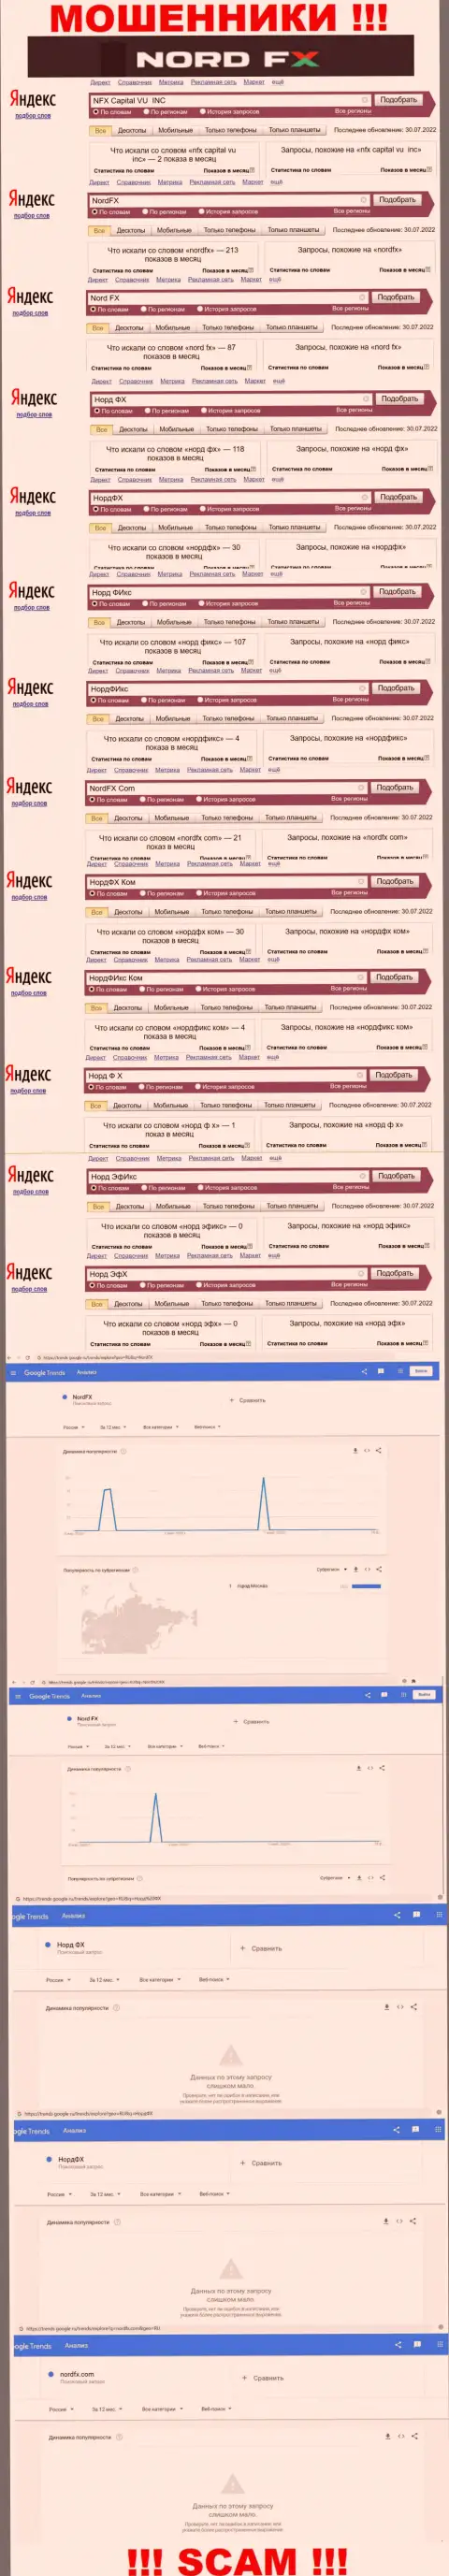 Суммарное число online запросов в поисковиках сети по бренду мошенников Норд ФИкс